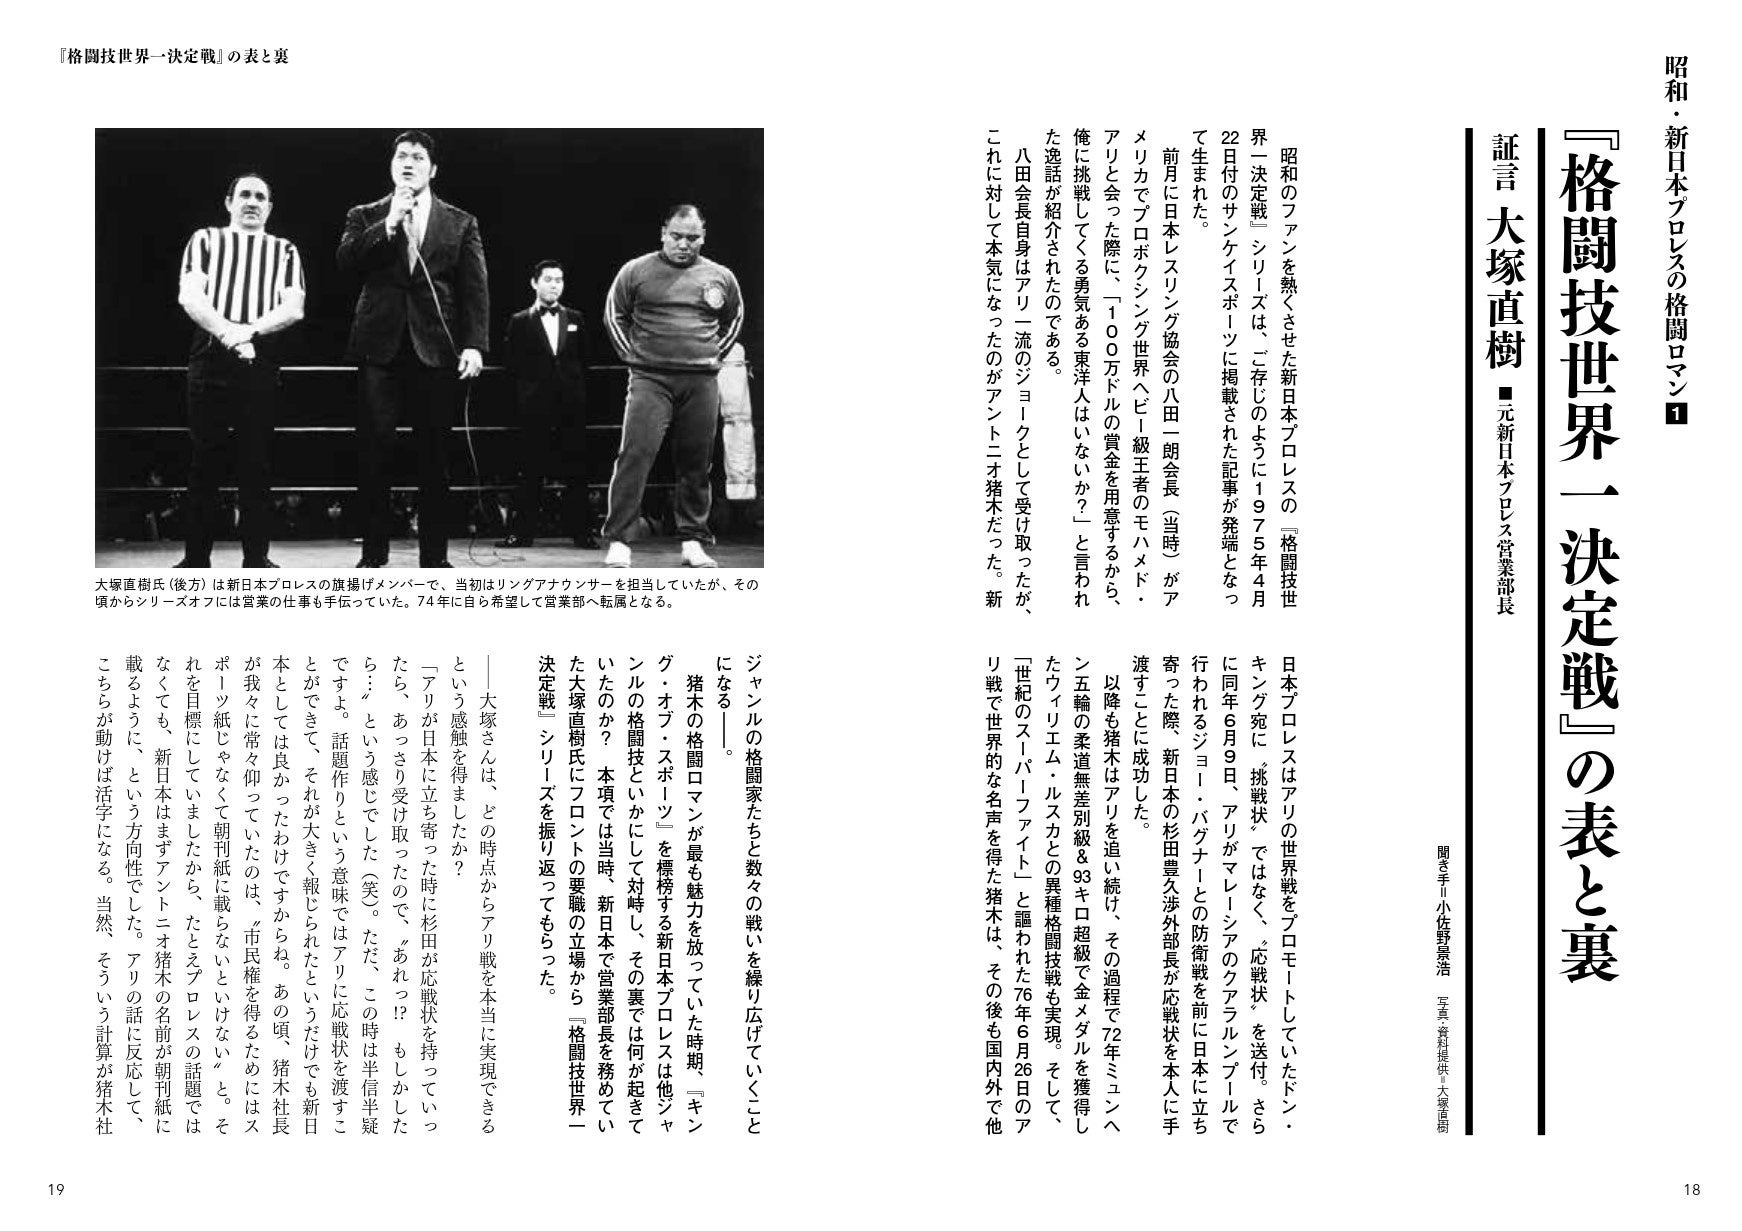 元新日本プロレス営業部長の大塚直樹氏が『世界一格闘技決定戦』シリーズの舞台裏を明かす